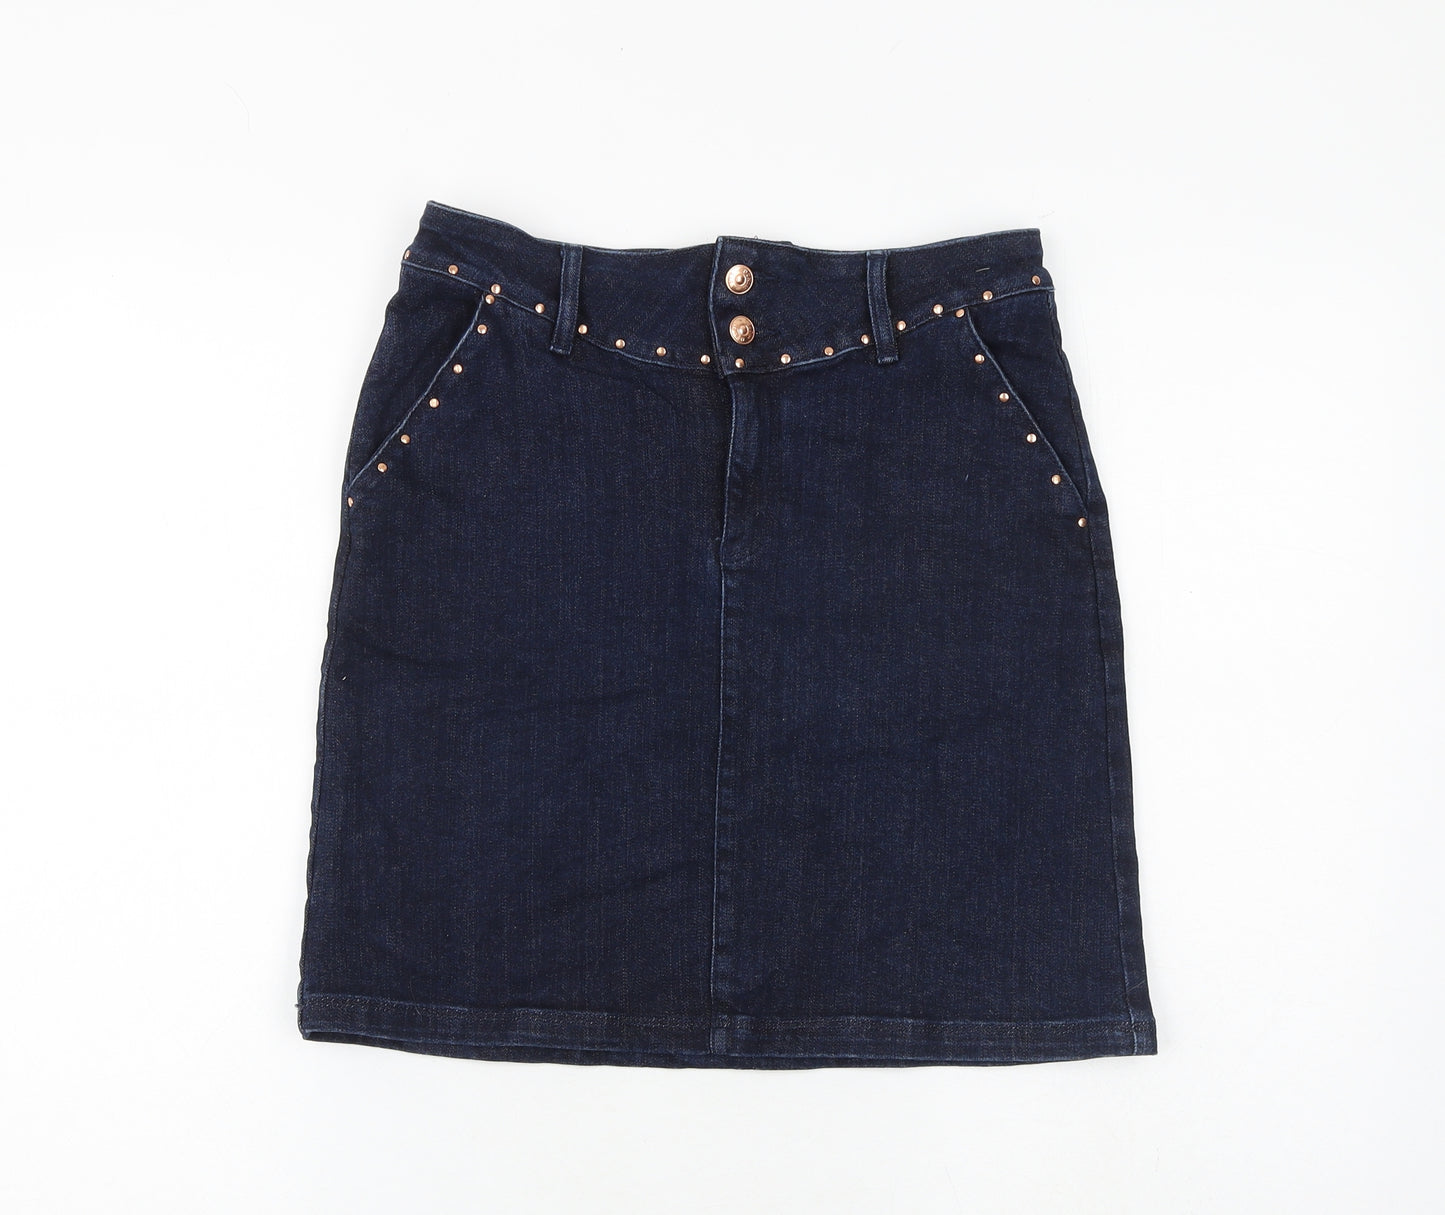 F&F Womens Blue Cotton A-Line Skirt Size 8 Zip